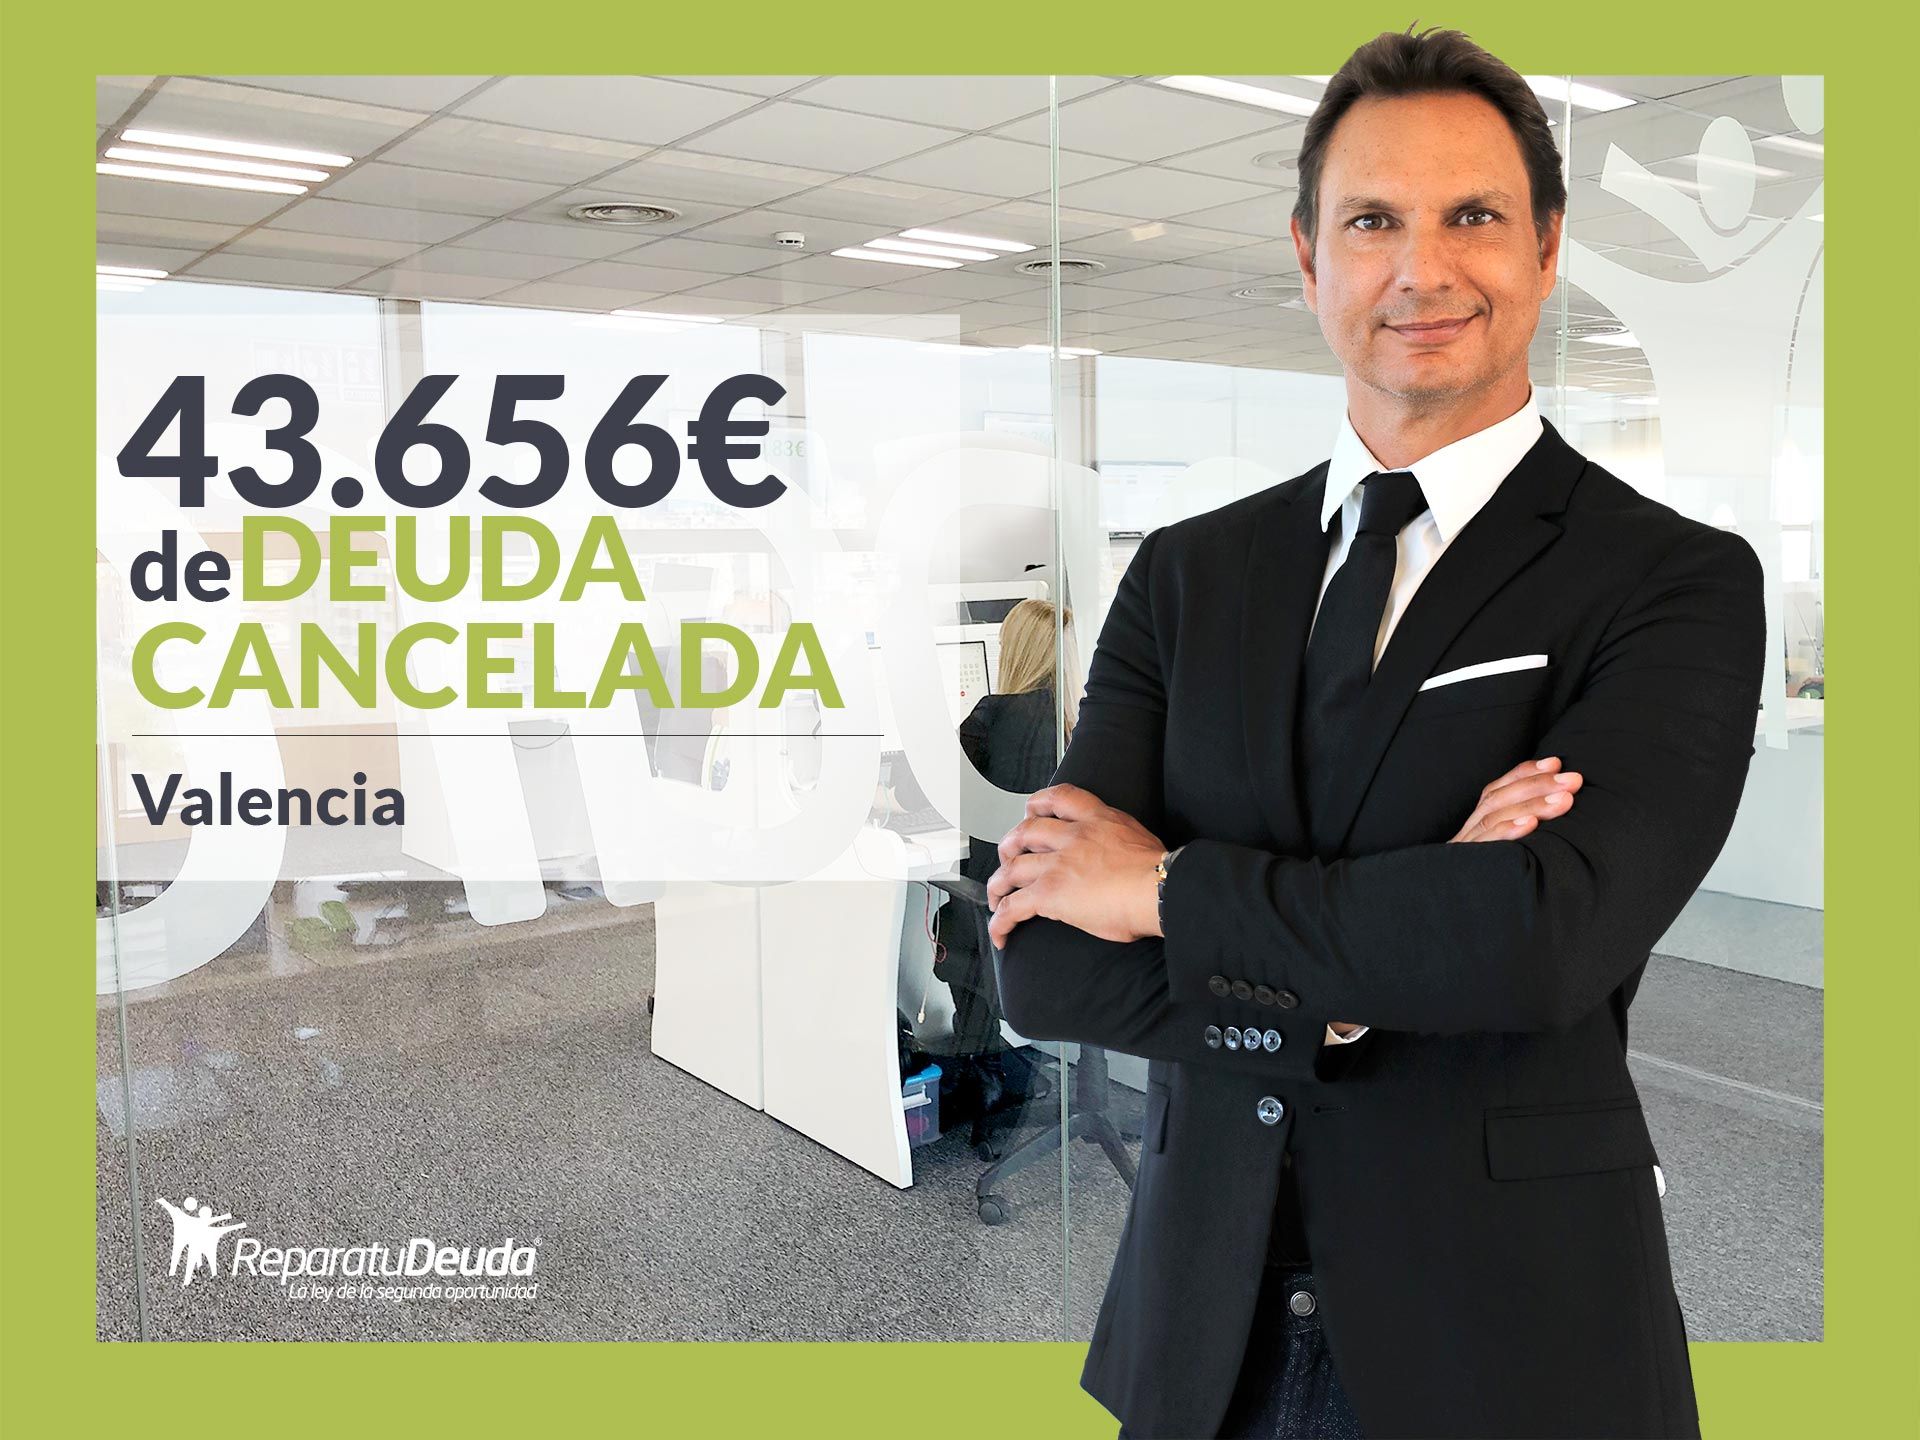 Repara tu Deuda Abogados cancela 43.656? en Valencia con la Ley de Segunda Oportunidad